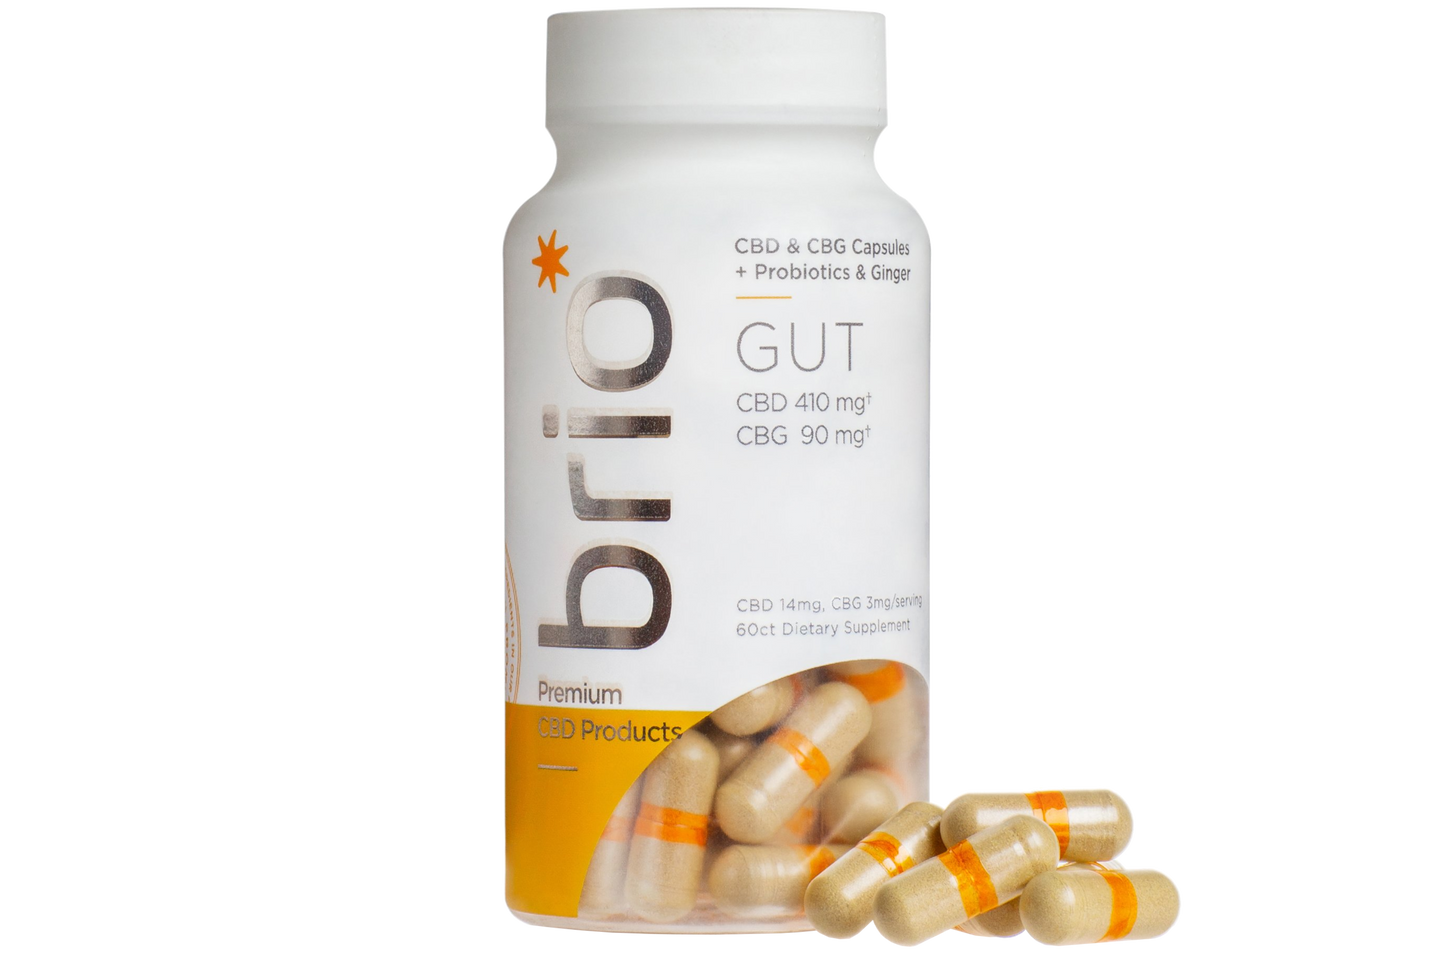 Brio Broad Spectrum CBD Probiotic Capsules, Gut - 60ct (a Capsules) made by Brio Nutrition sold at CBD Emporium